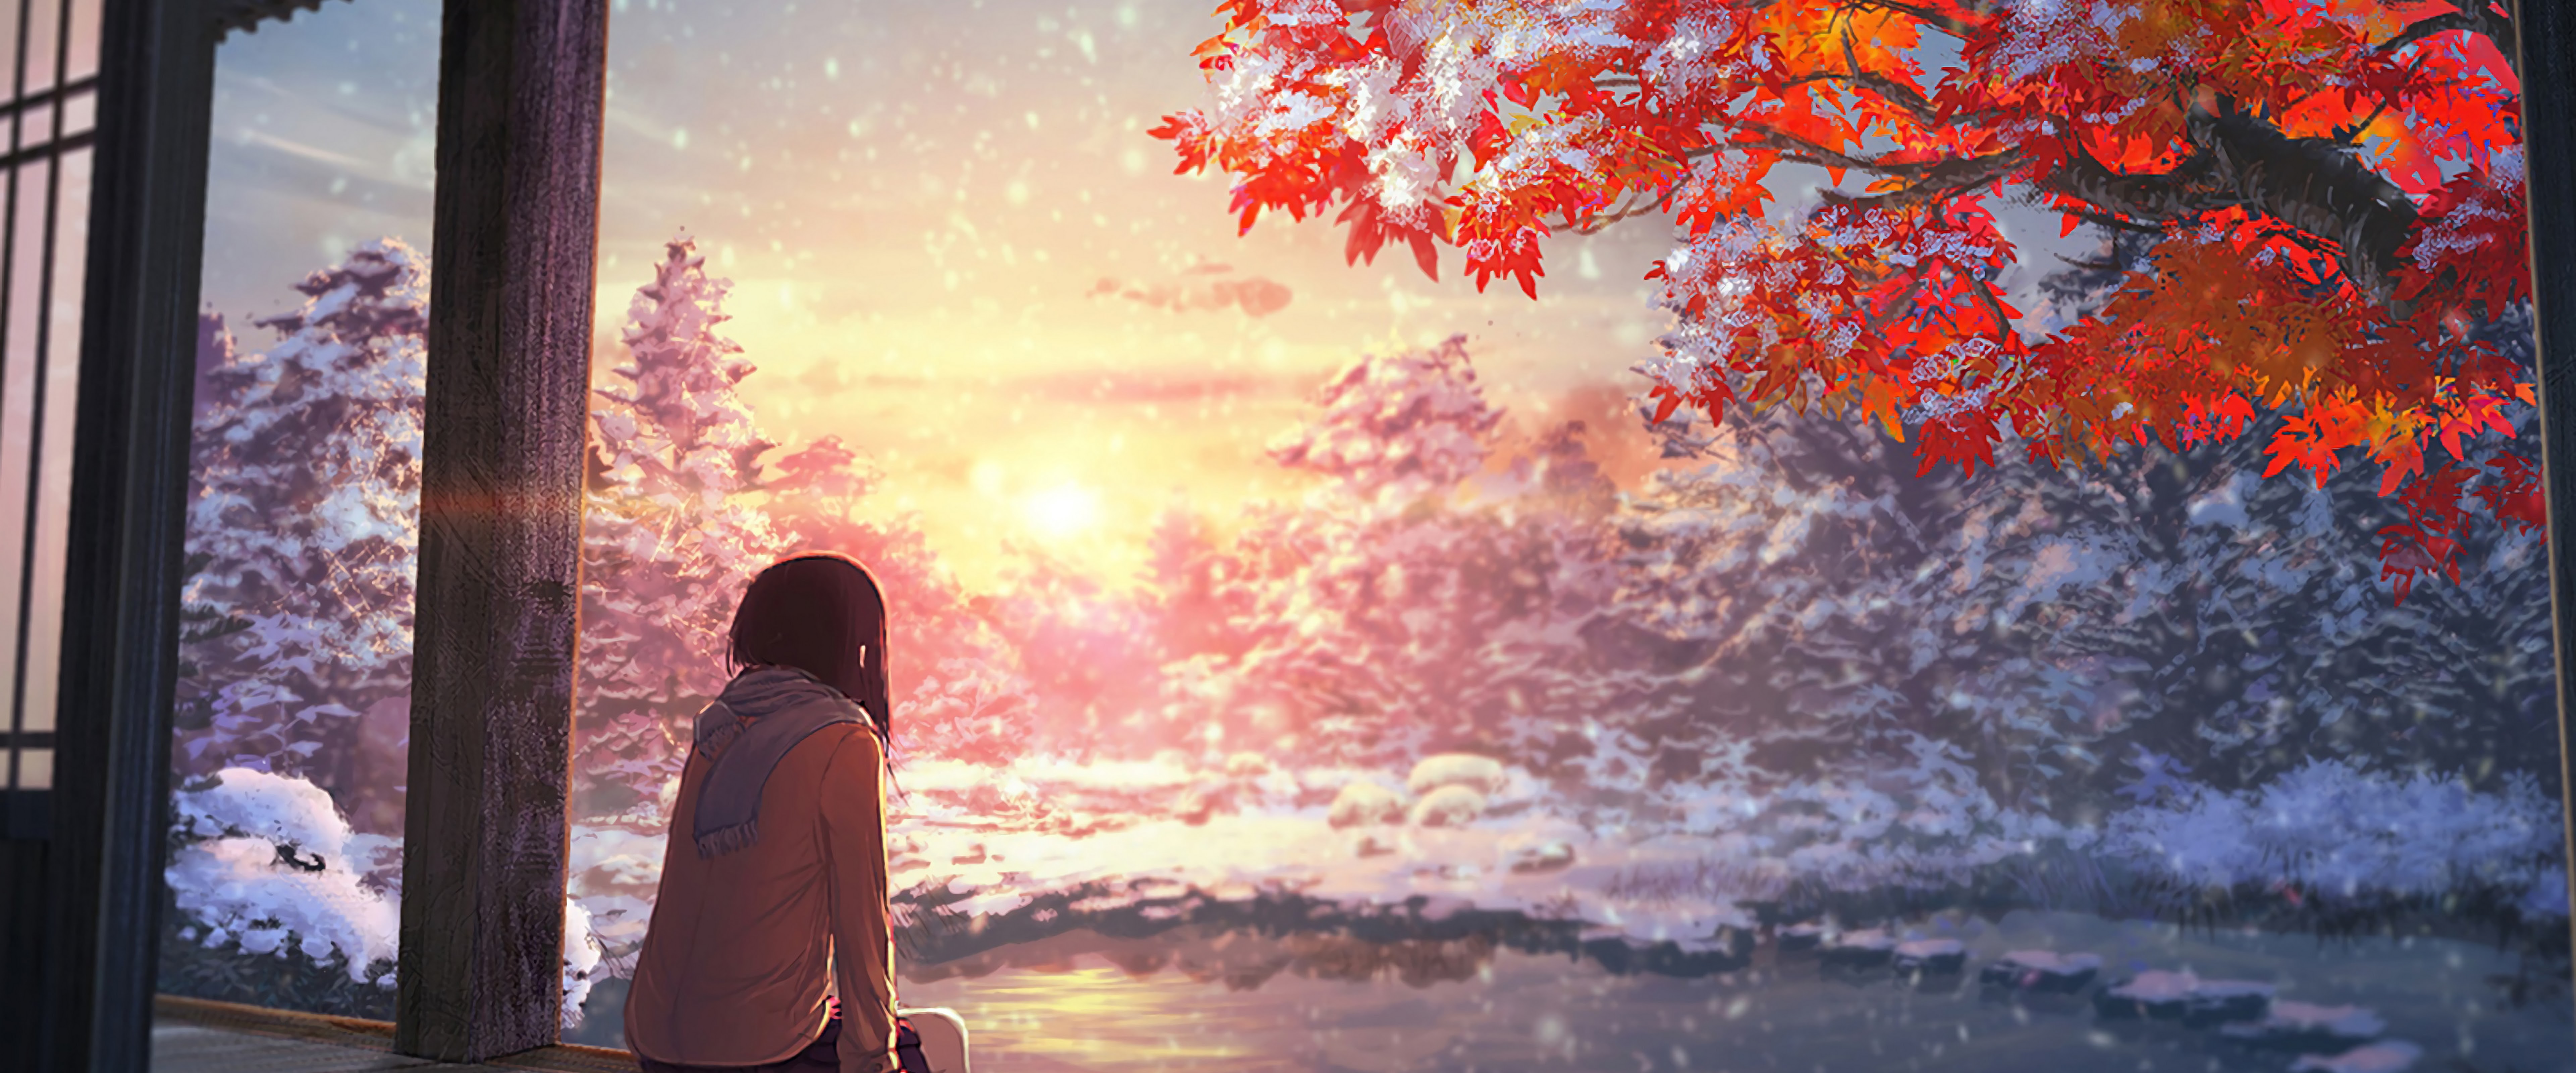 Anime Scenery Autumn Sunset 4K Wallpaper